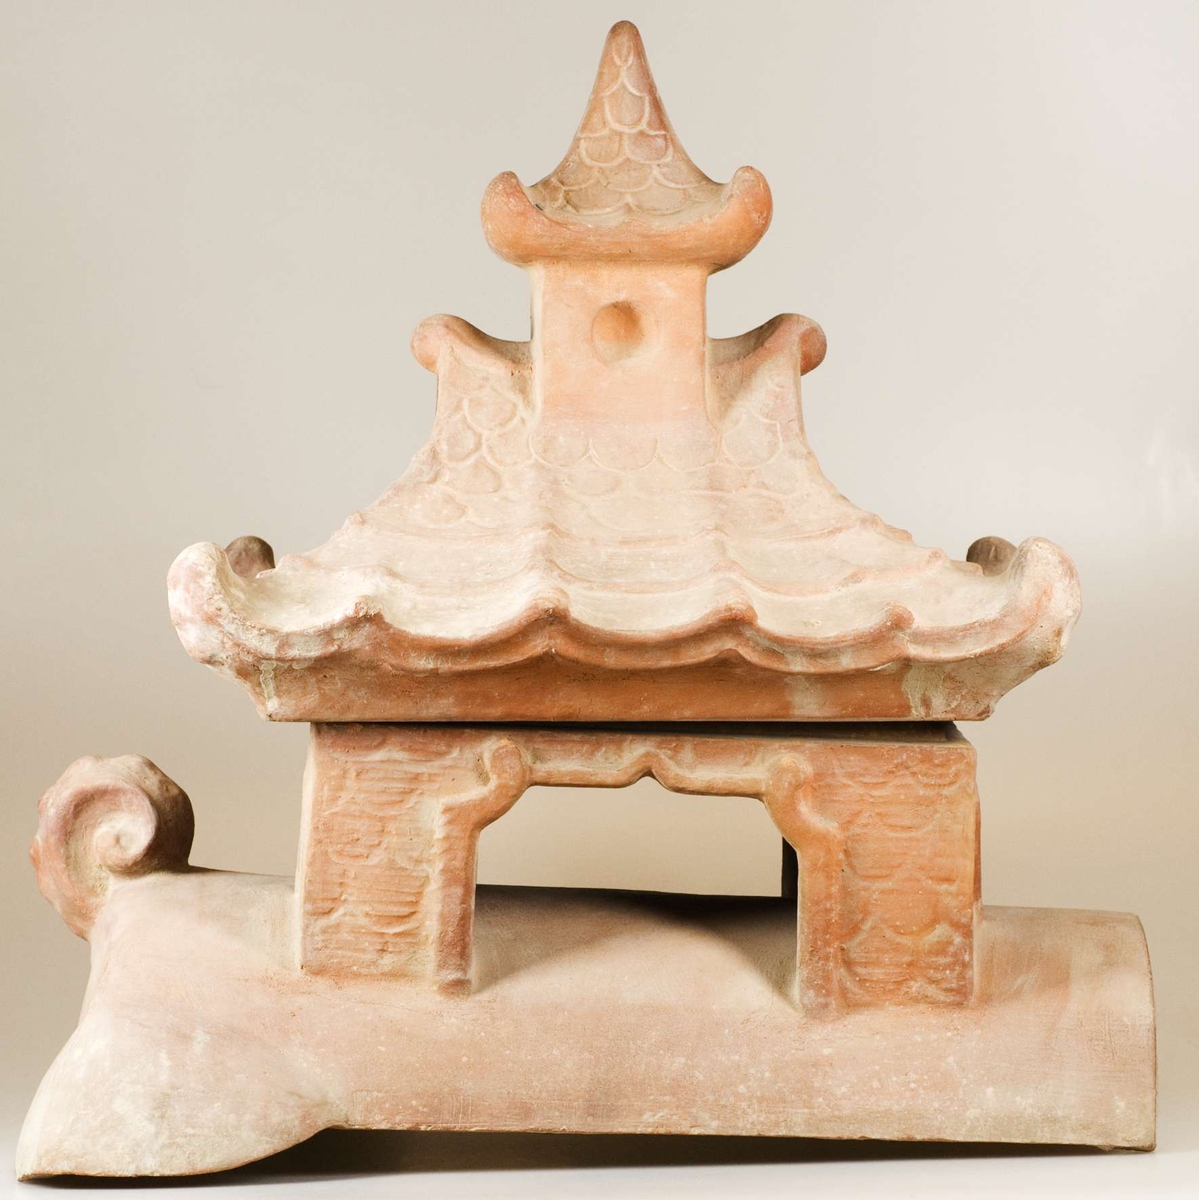 Del av större skulptur eller byggnadsdekoration föreställande kinesisk byggnad på ryggen av ett djur. Består av två delar, dels den nedre delen av byggnaden stående på en djurrygg, dels taket på byggnaden.